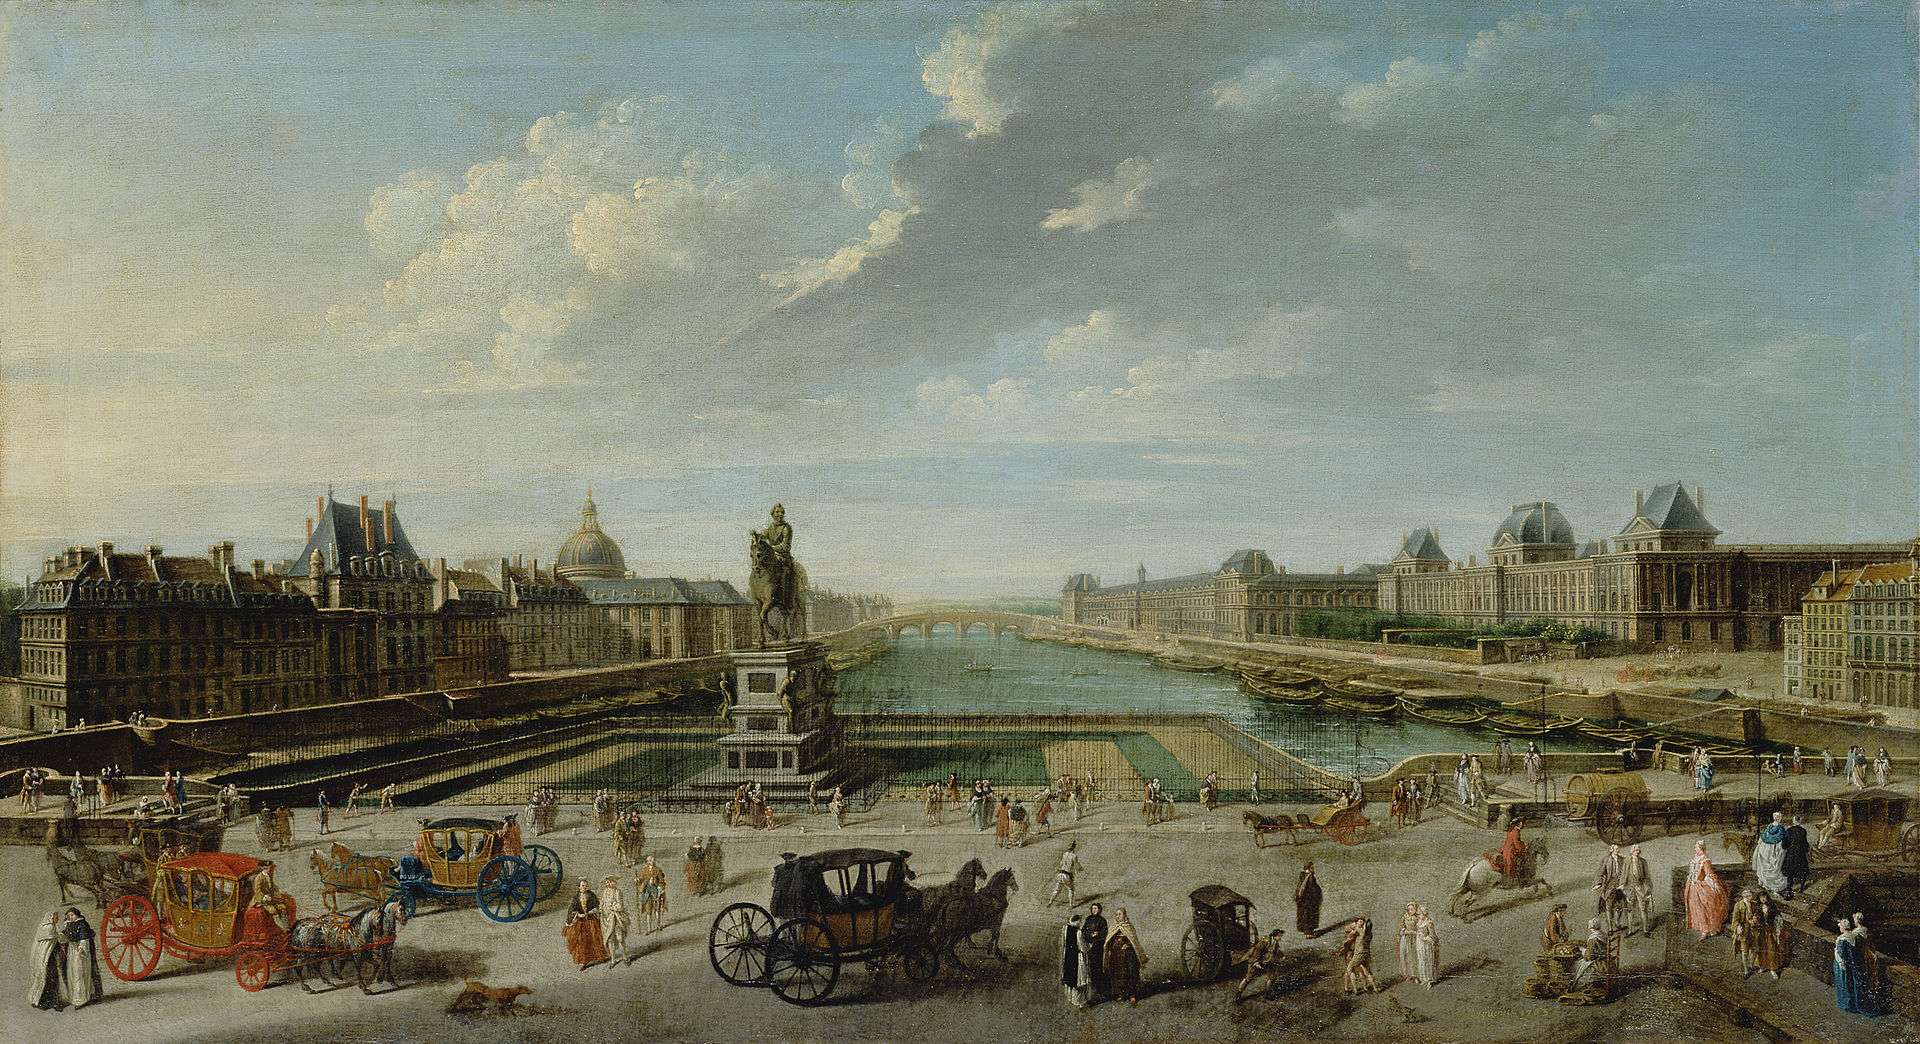 Paris in the 18th century